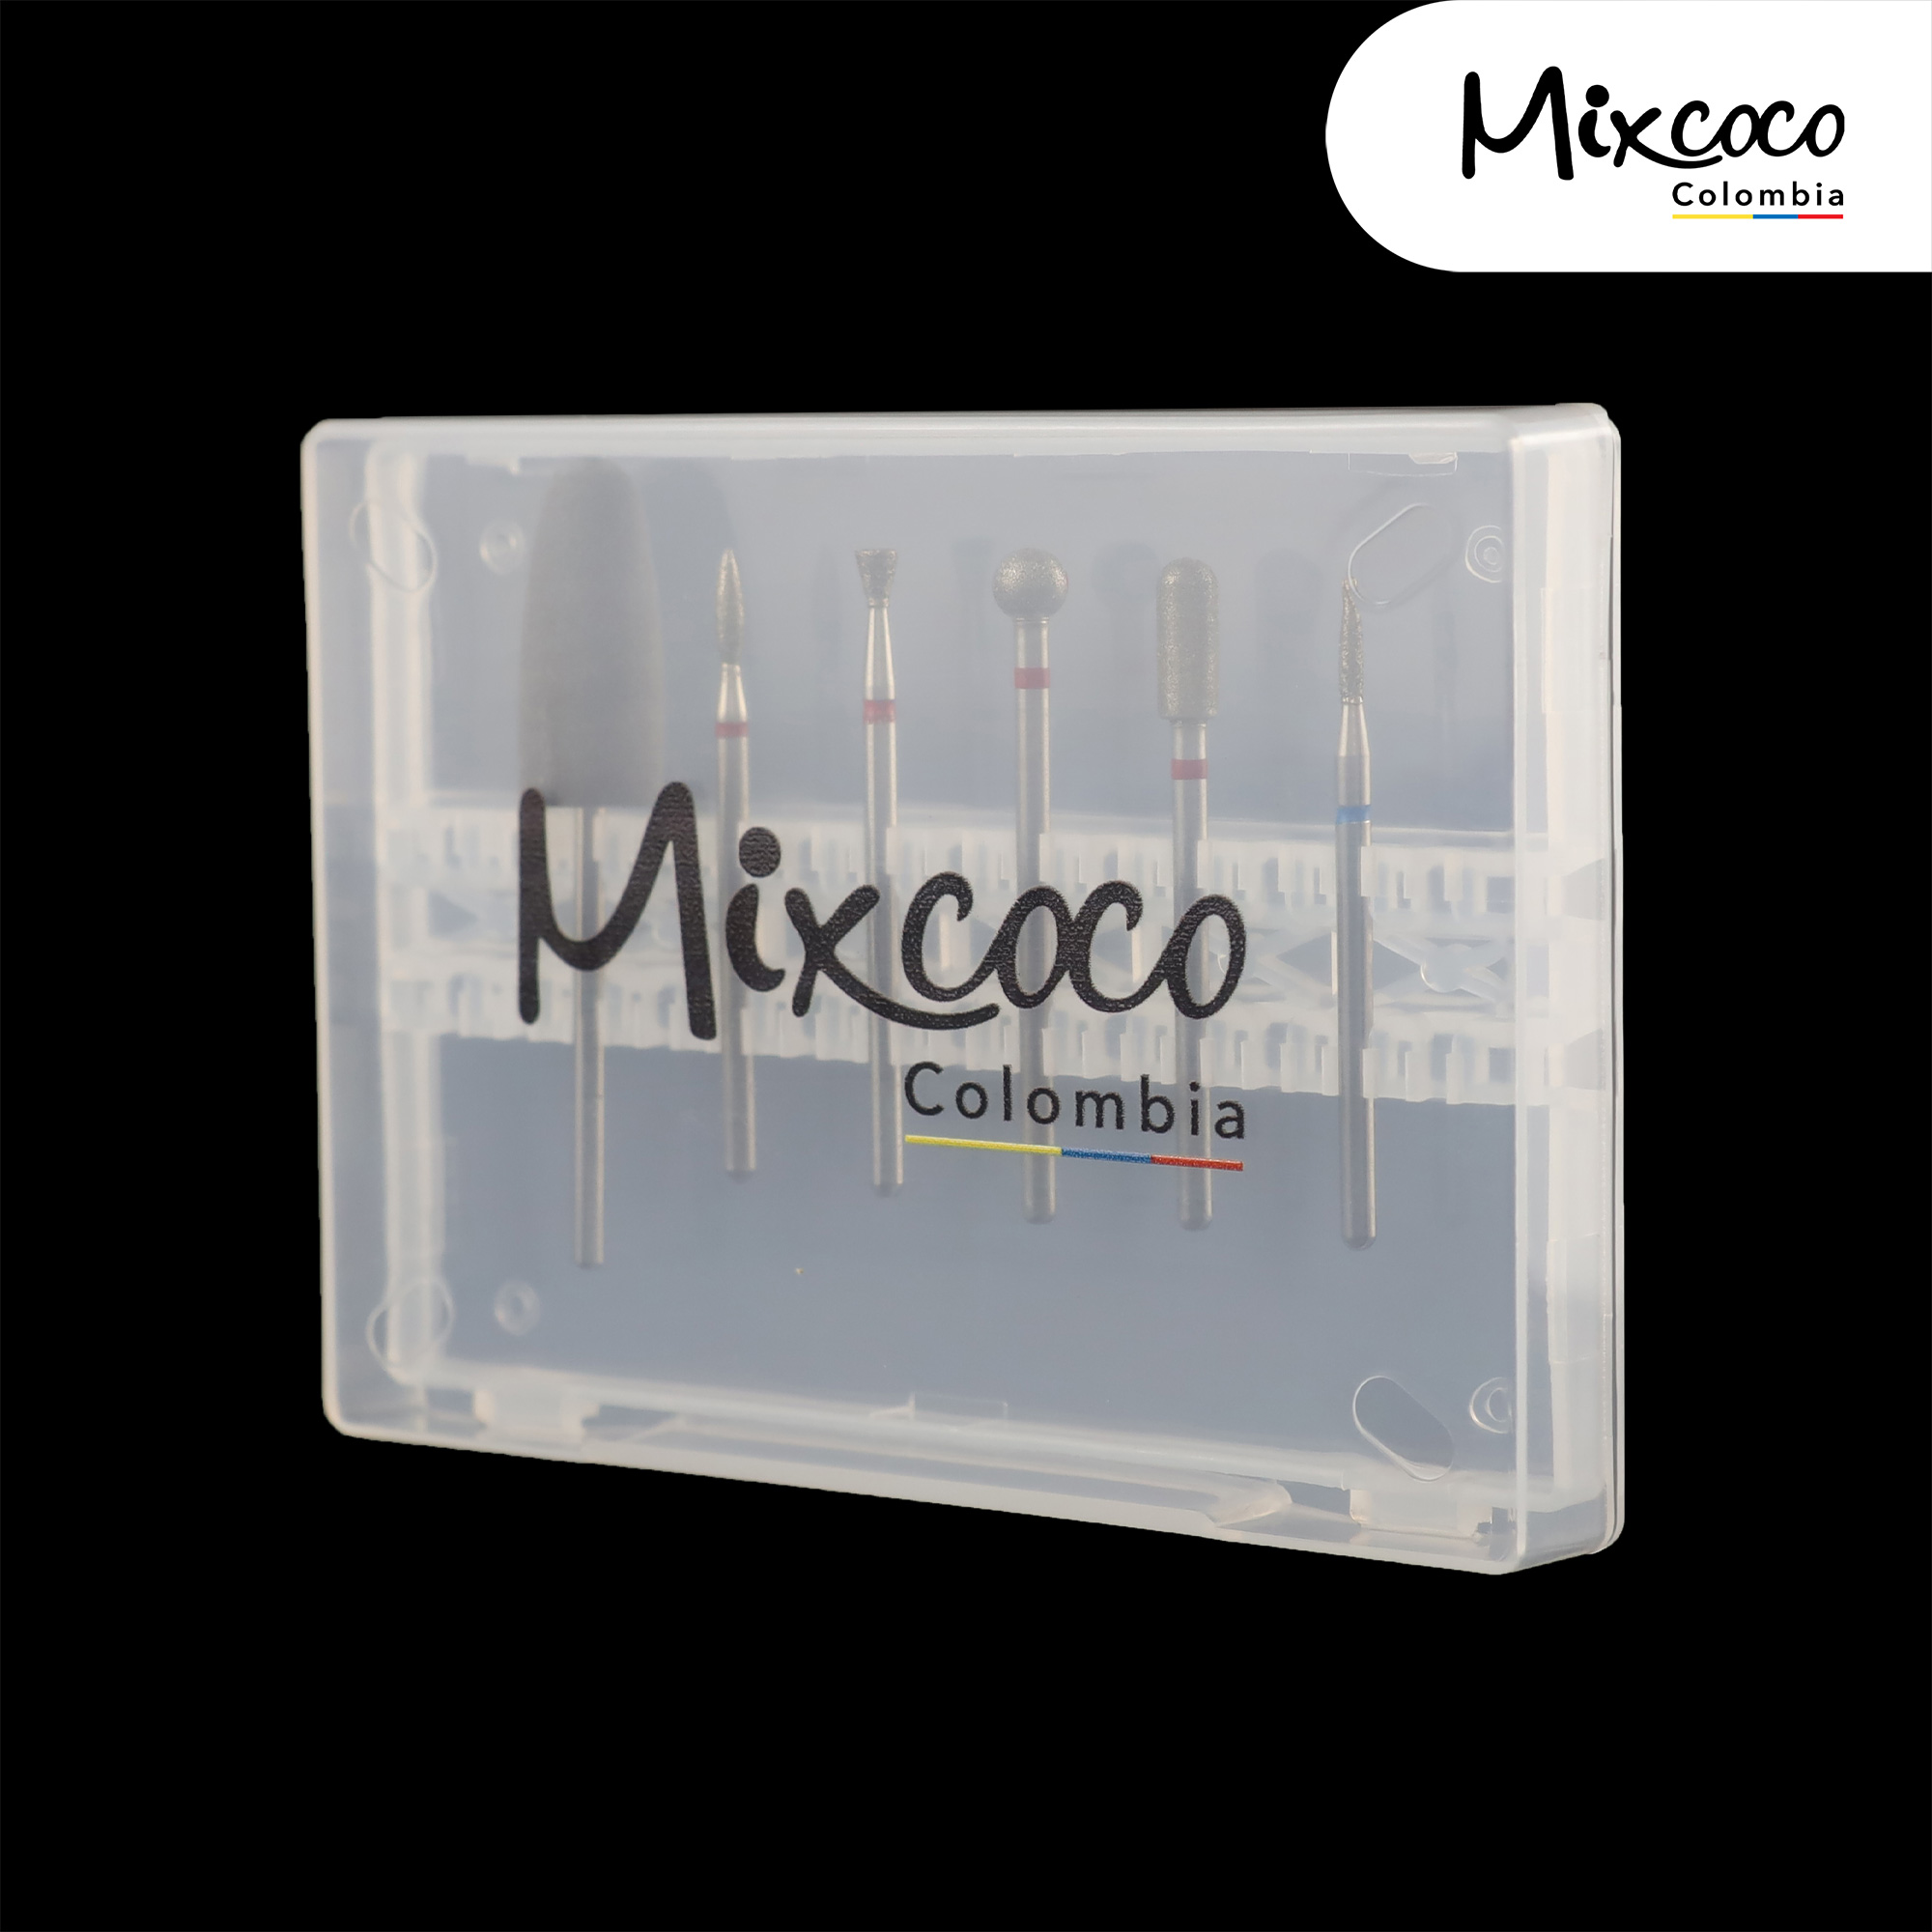 Caja de Brocas para Manicura x6 und Mixcoco